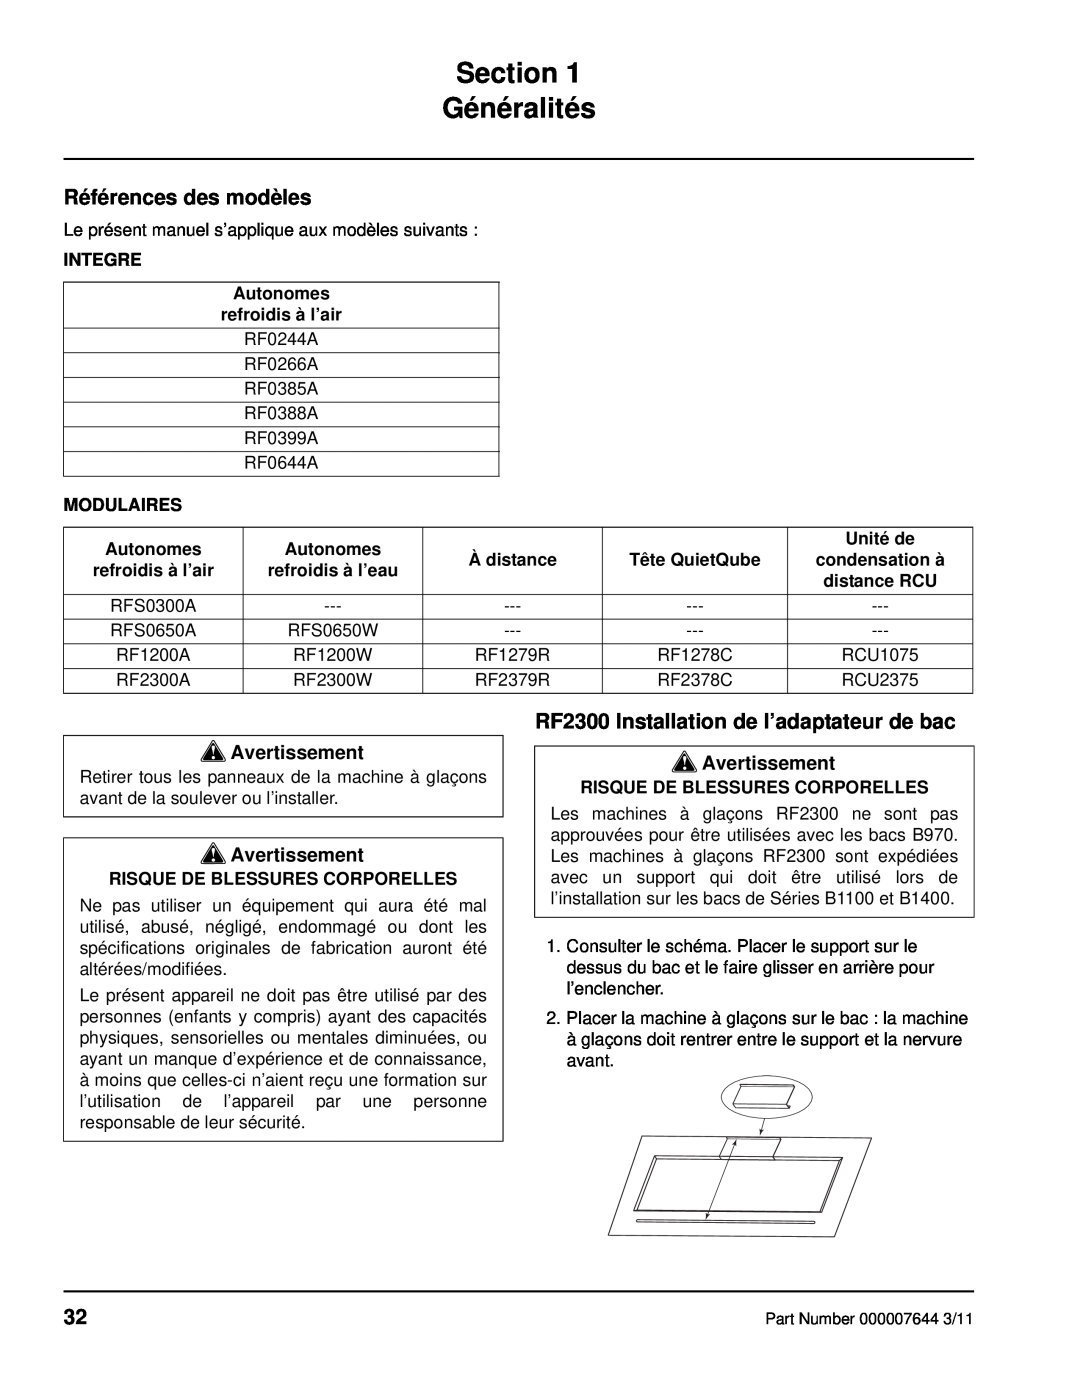 Manitowoc Ice Section Généralités, Références des modèles, RF2300 Installation de l’adaptateur de bac, Avertissement 